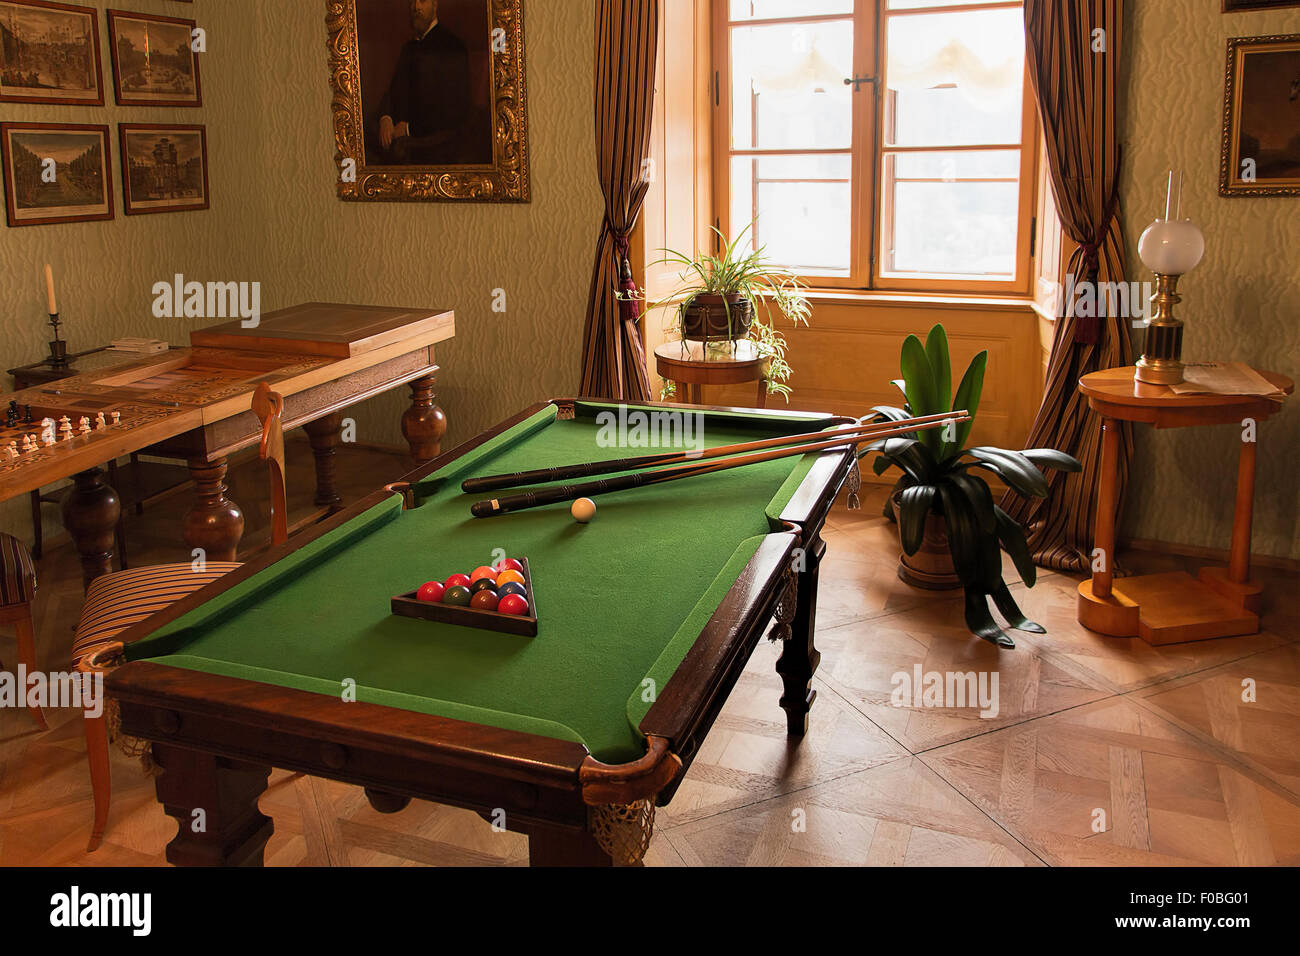 Die historischen Pool oder Billard-Tisch und andere Spiele im klassischen biedermeier Stil Stockfoto